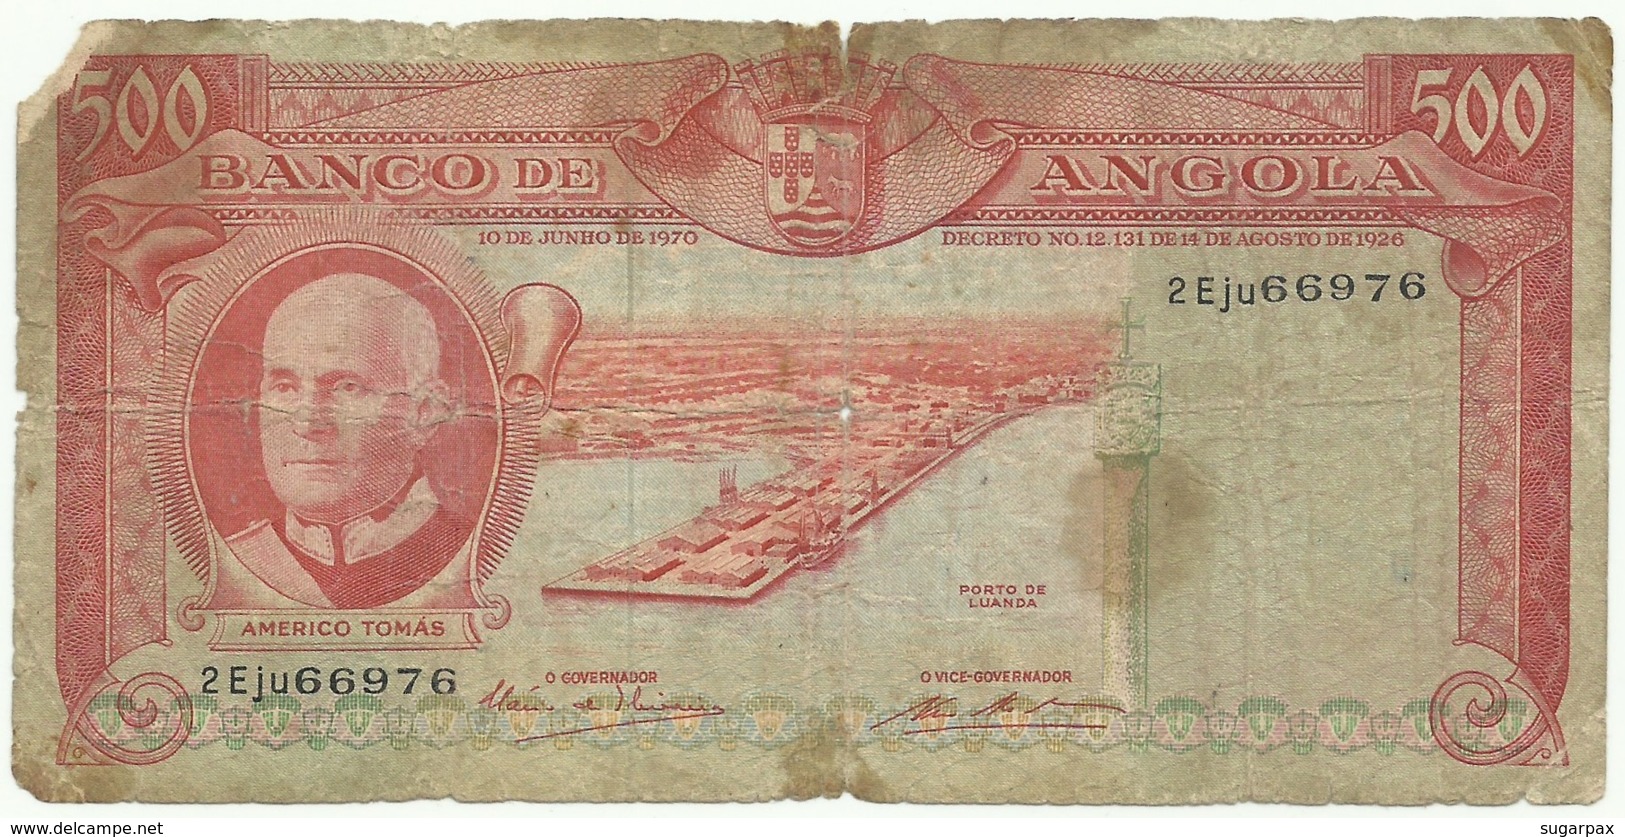 Angola - 500 Escudos - 10.06.1970 - Pick 97 - Série 2 Eju - Américo Tomás - PORTUGAL - Angola